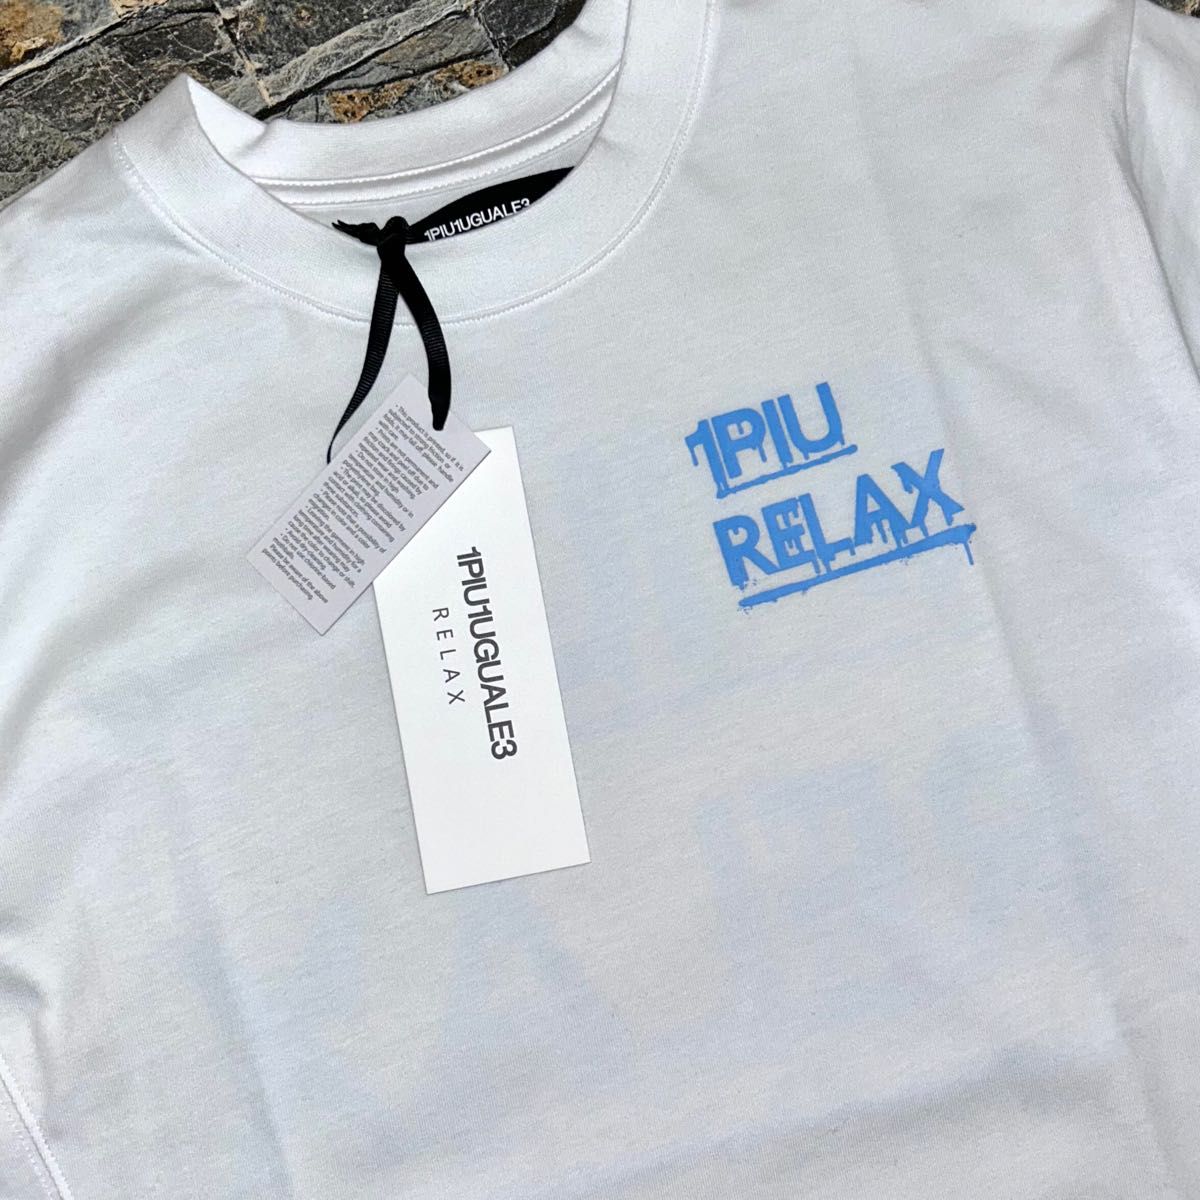 【新品】1PIU1UGUALE3 RELAX／ペインティング パックプリントロゴ Tシャツ Mサイズ 半袖